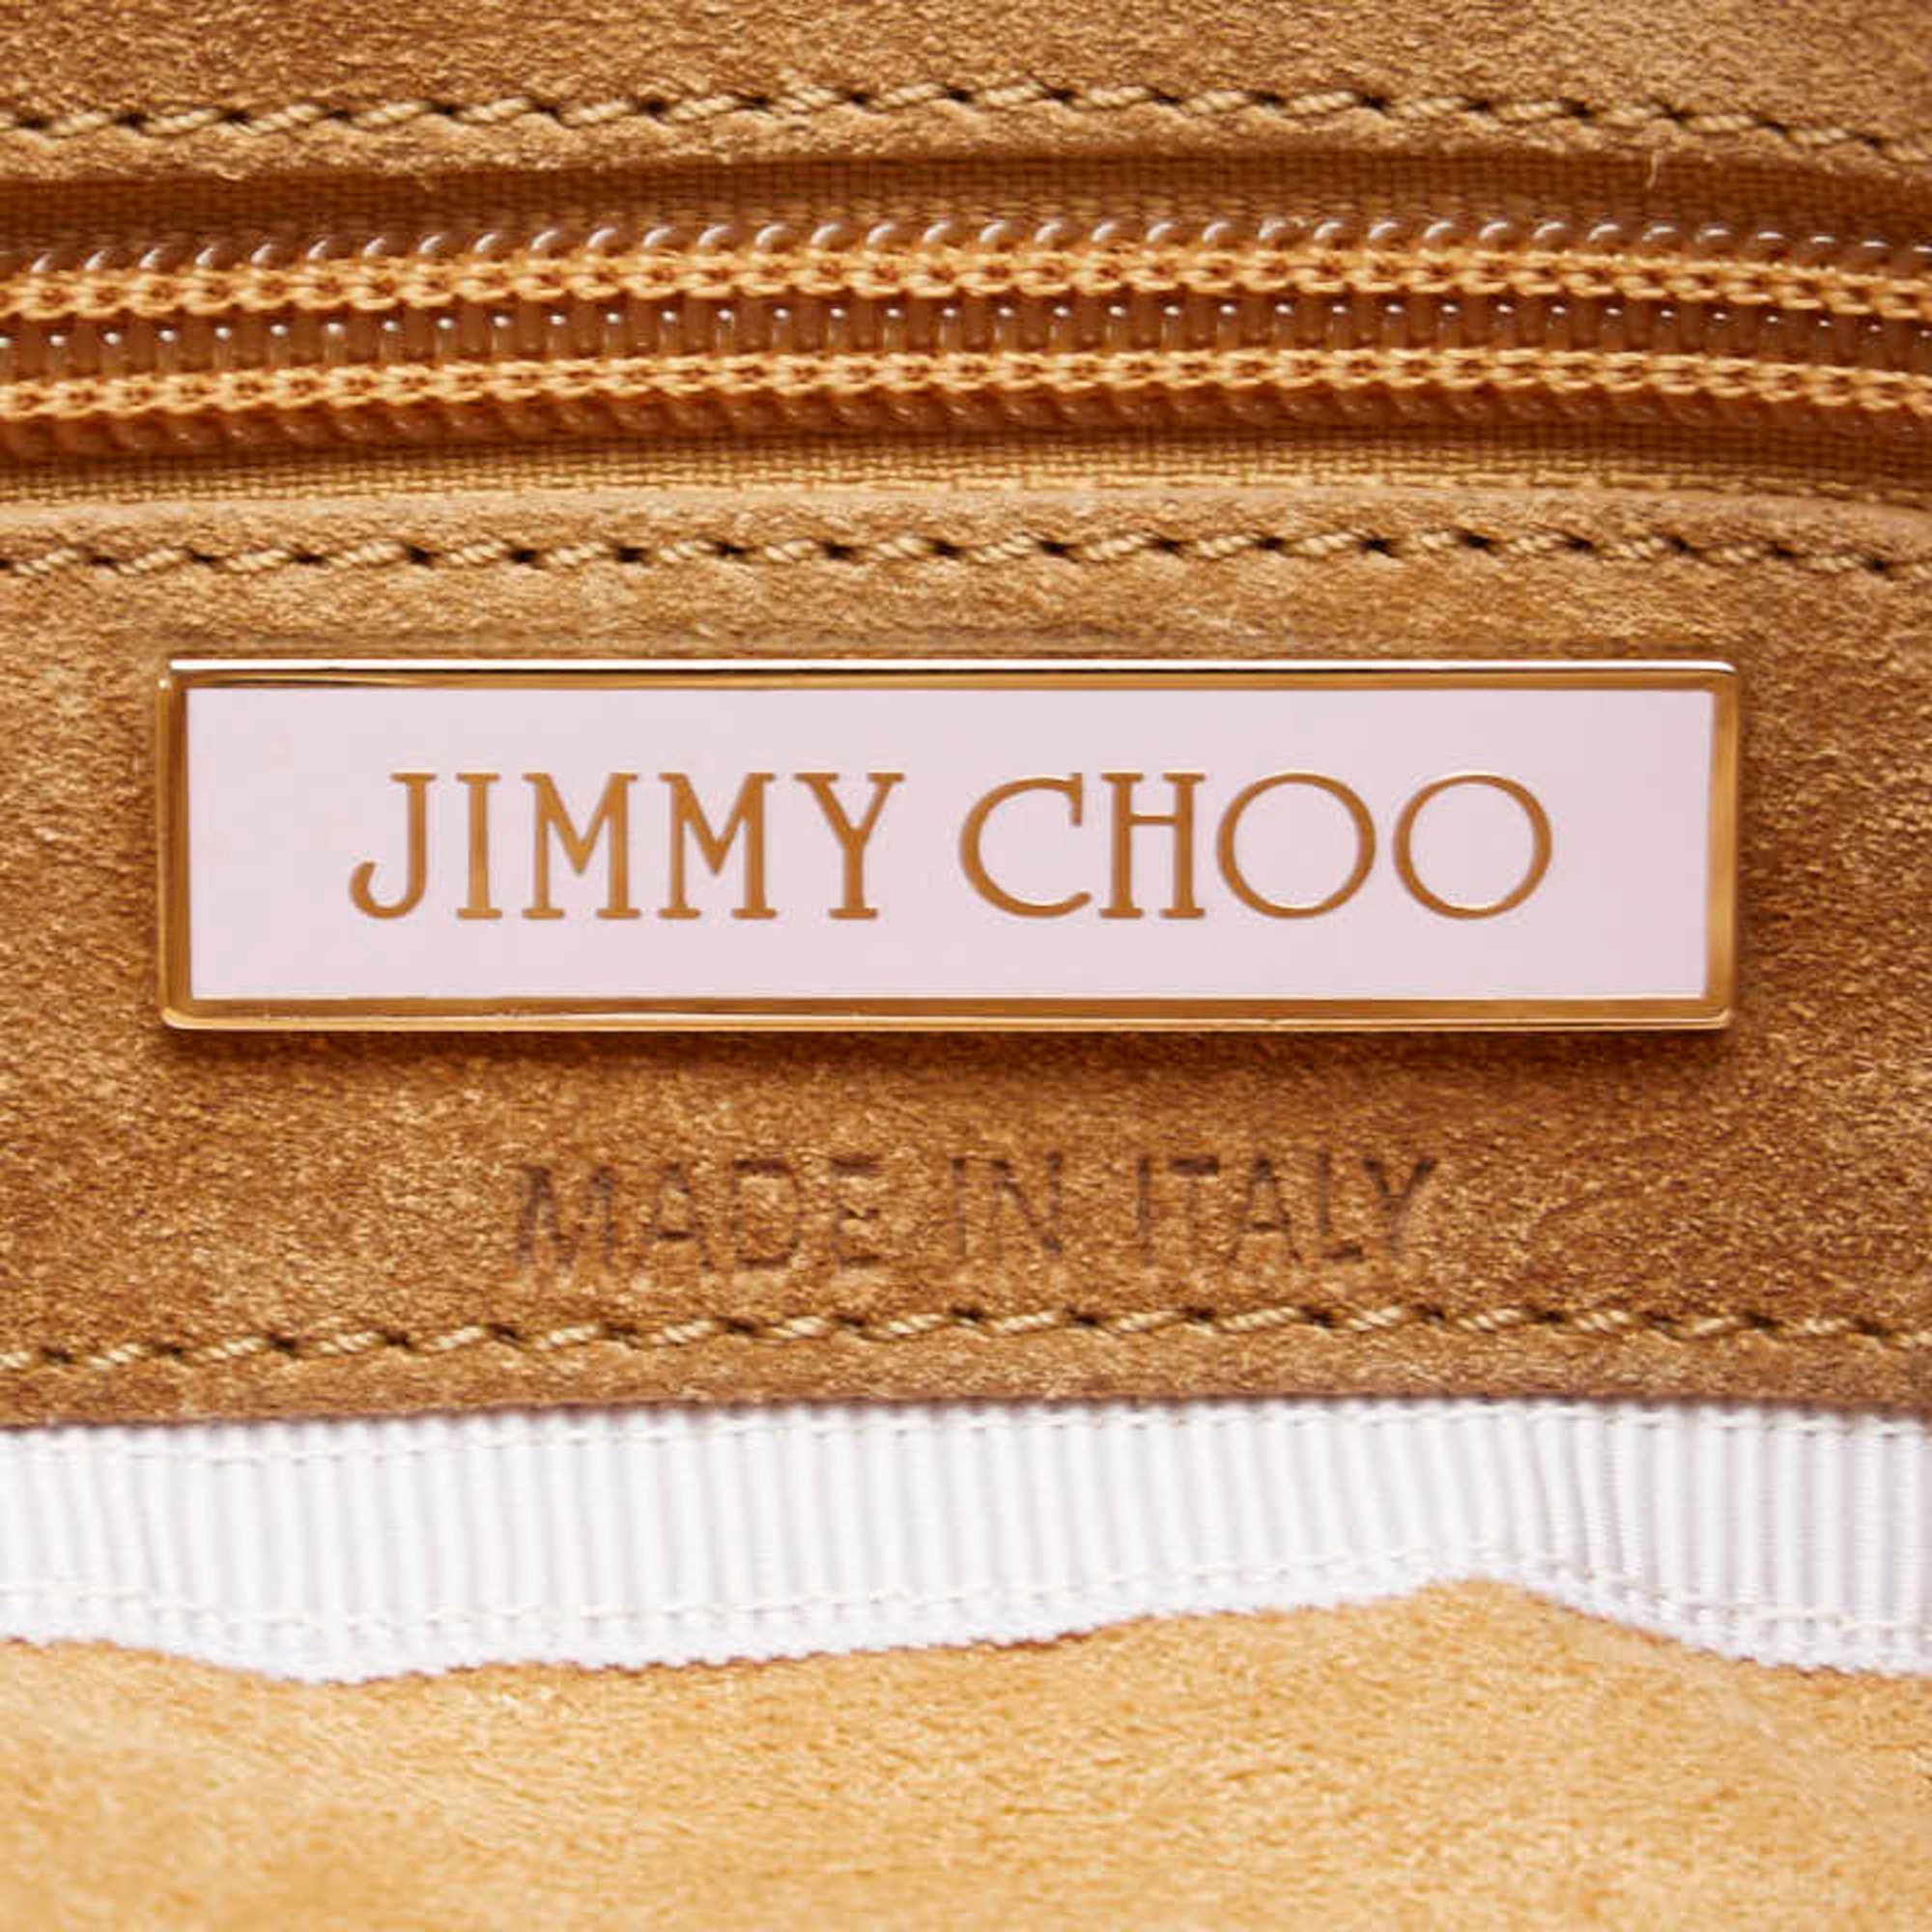 Jimmy Choo Tassel Bag Handbag Brown Suede Leather Women's JIMMY CHOO